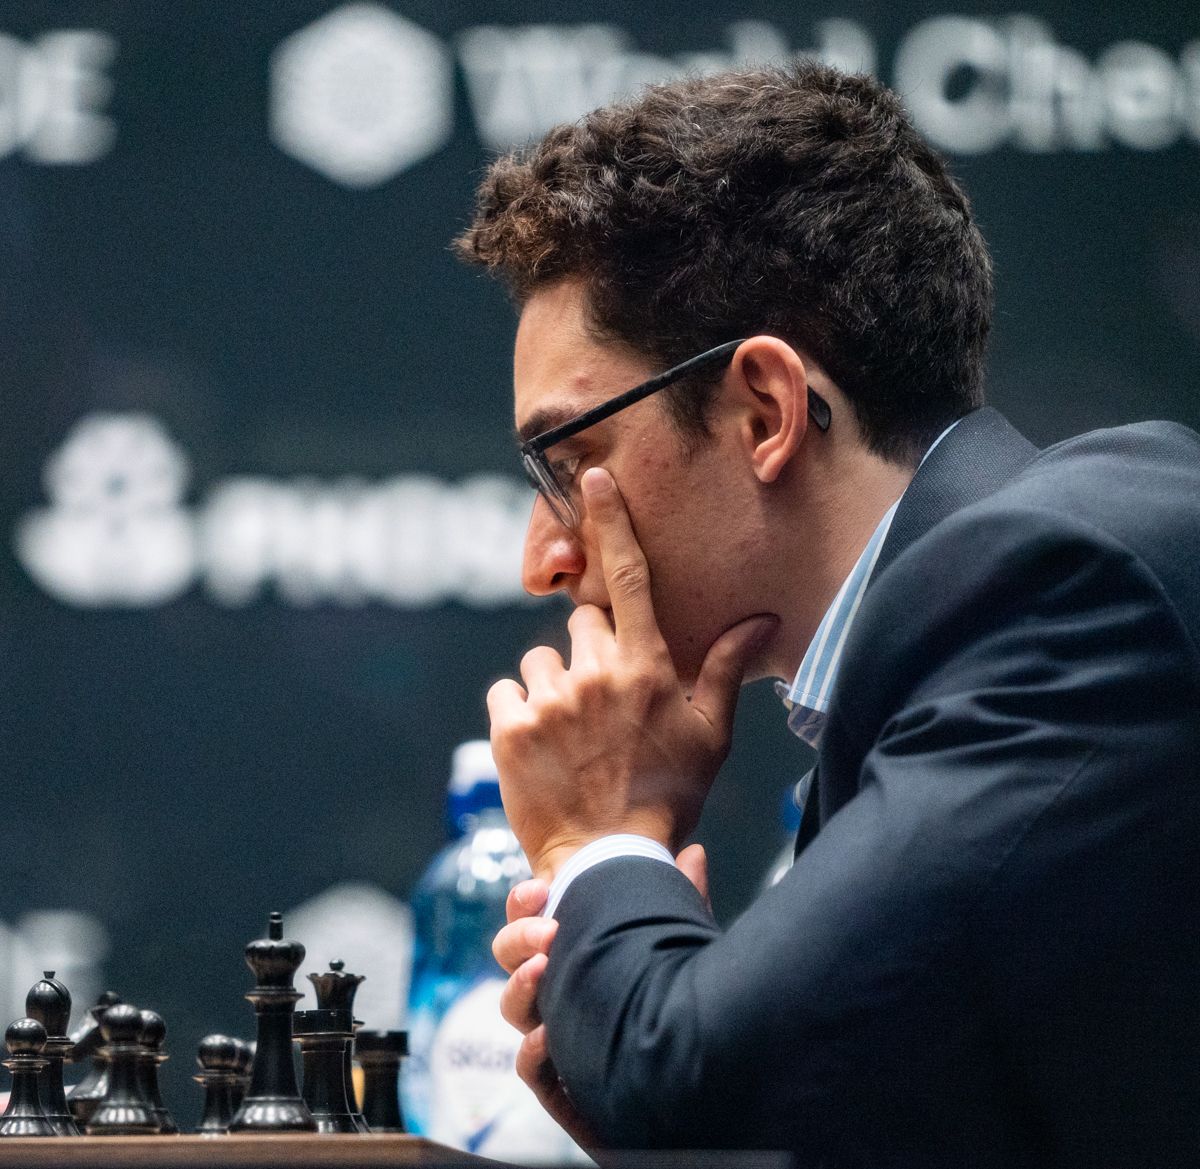 Mundial de Xadrez Partida 5: Gambito Surpreendente de Caruana Não Quebra o  Impasse 